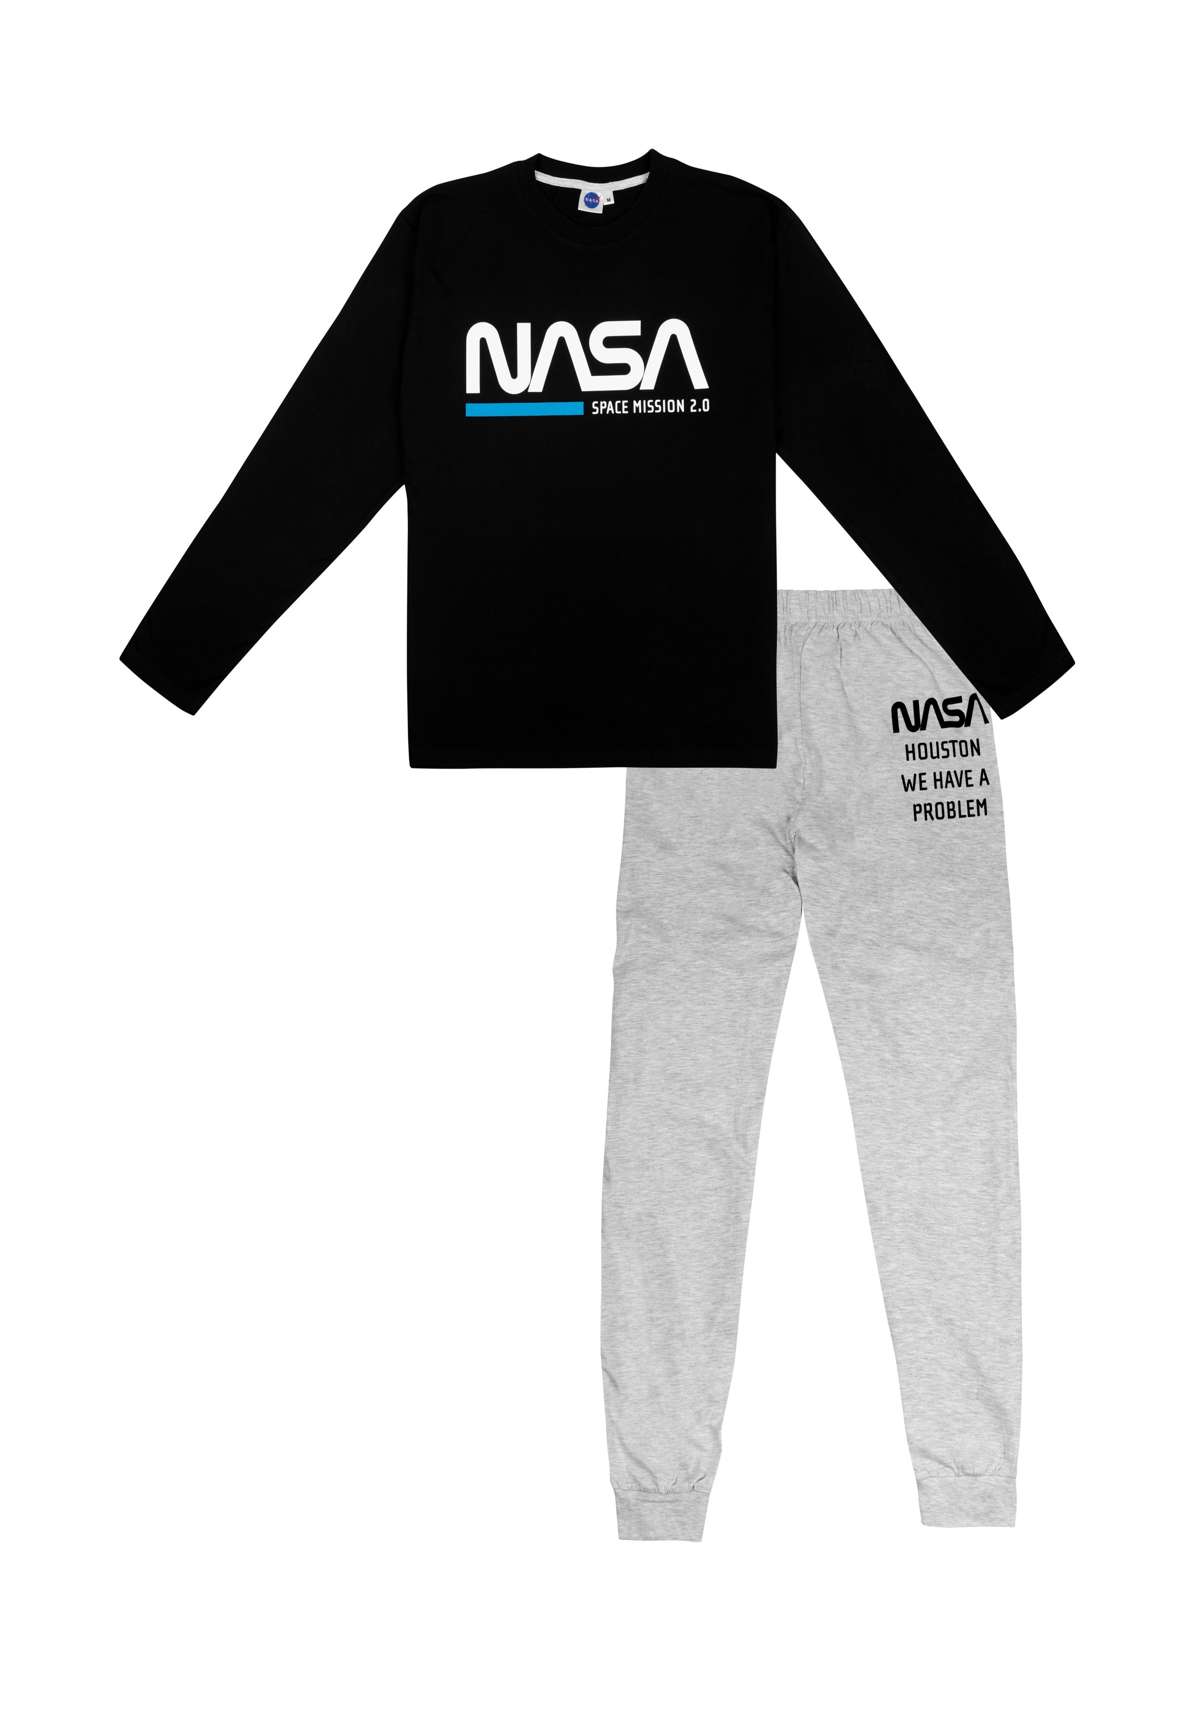 Пижама NASA SET LANGARM MIT NASA SET LANGARM MIT